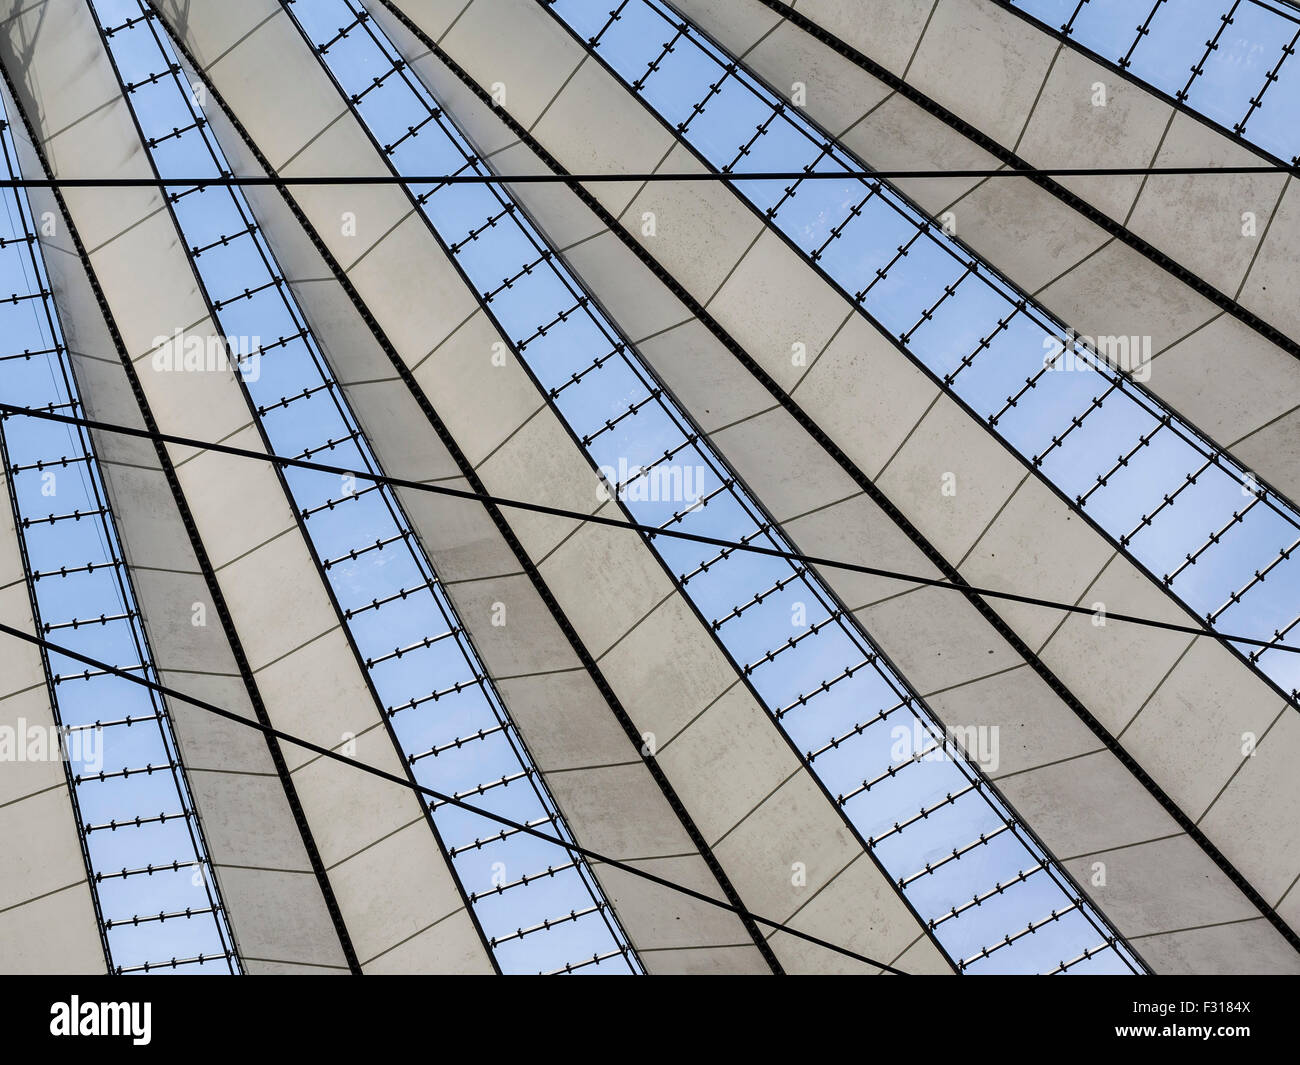 La Potsdamer Platz, Sony Center, un toit transparent, Berlin, Allemagne Banque D'Images